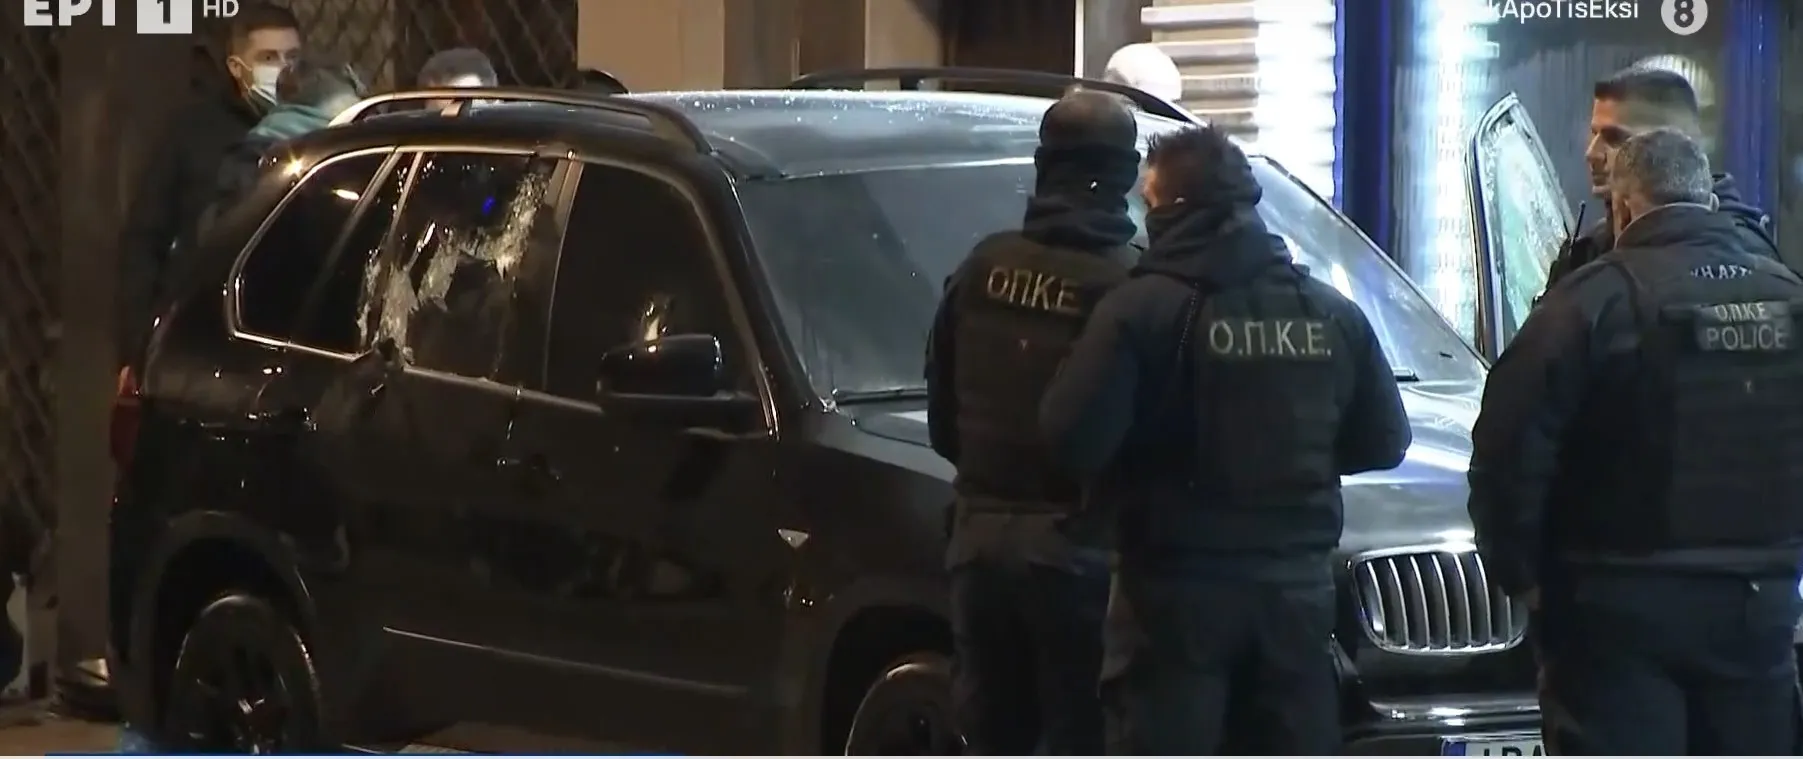 Greek Mafia – Νέος Κόσμος: Μέσα σε 28 δευτερόλεπτα εκτελέστηκε ο Βαγγέλης Ζαμπούνης – Κλεμμένο από το Μιλάνο το αυτοκίνητο